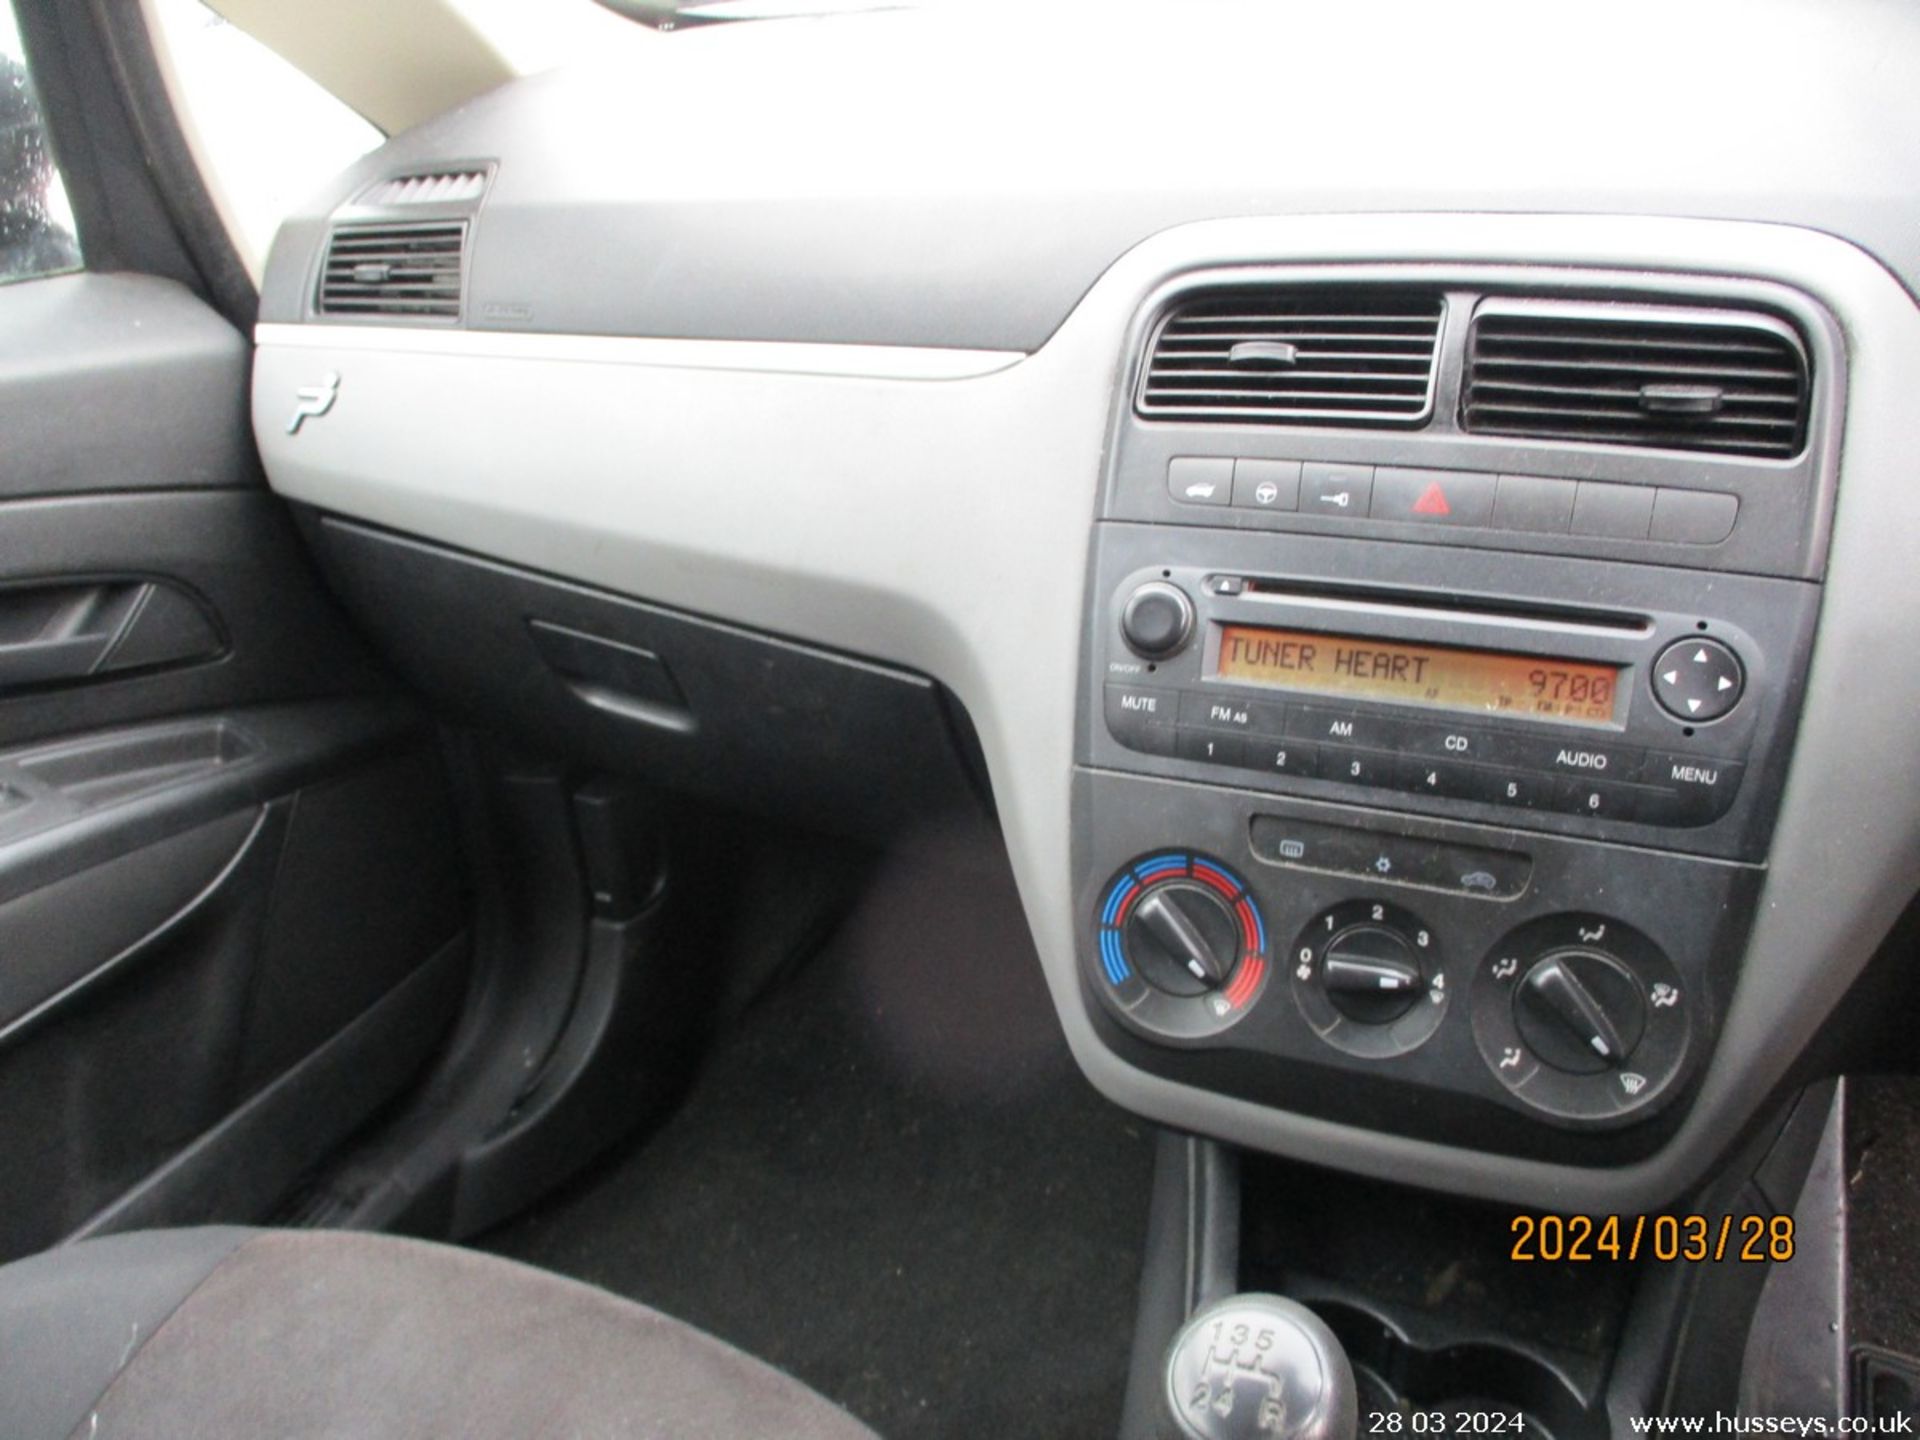 08/58 FIAT GRAND PUNTO ACTIVE 360 - 1242cc 5dr Hatchback (Grey, 97k) - Image 9 of 17